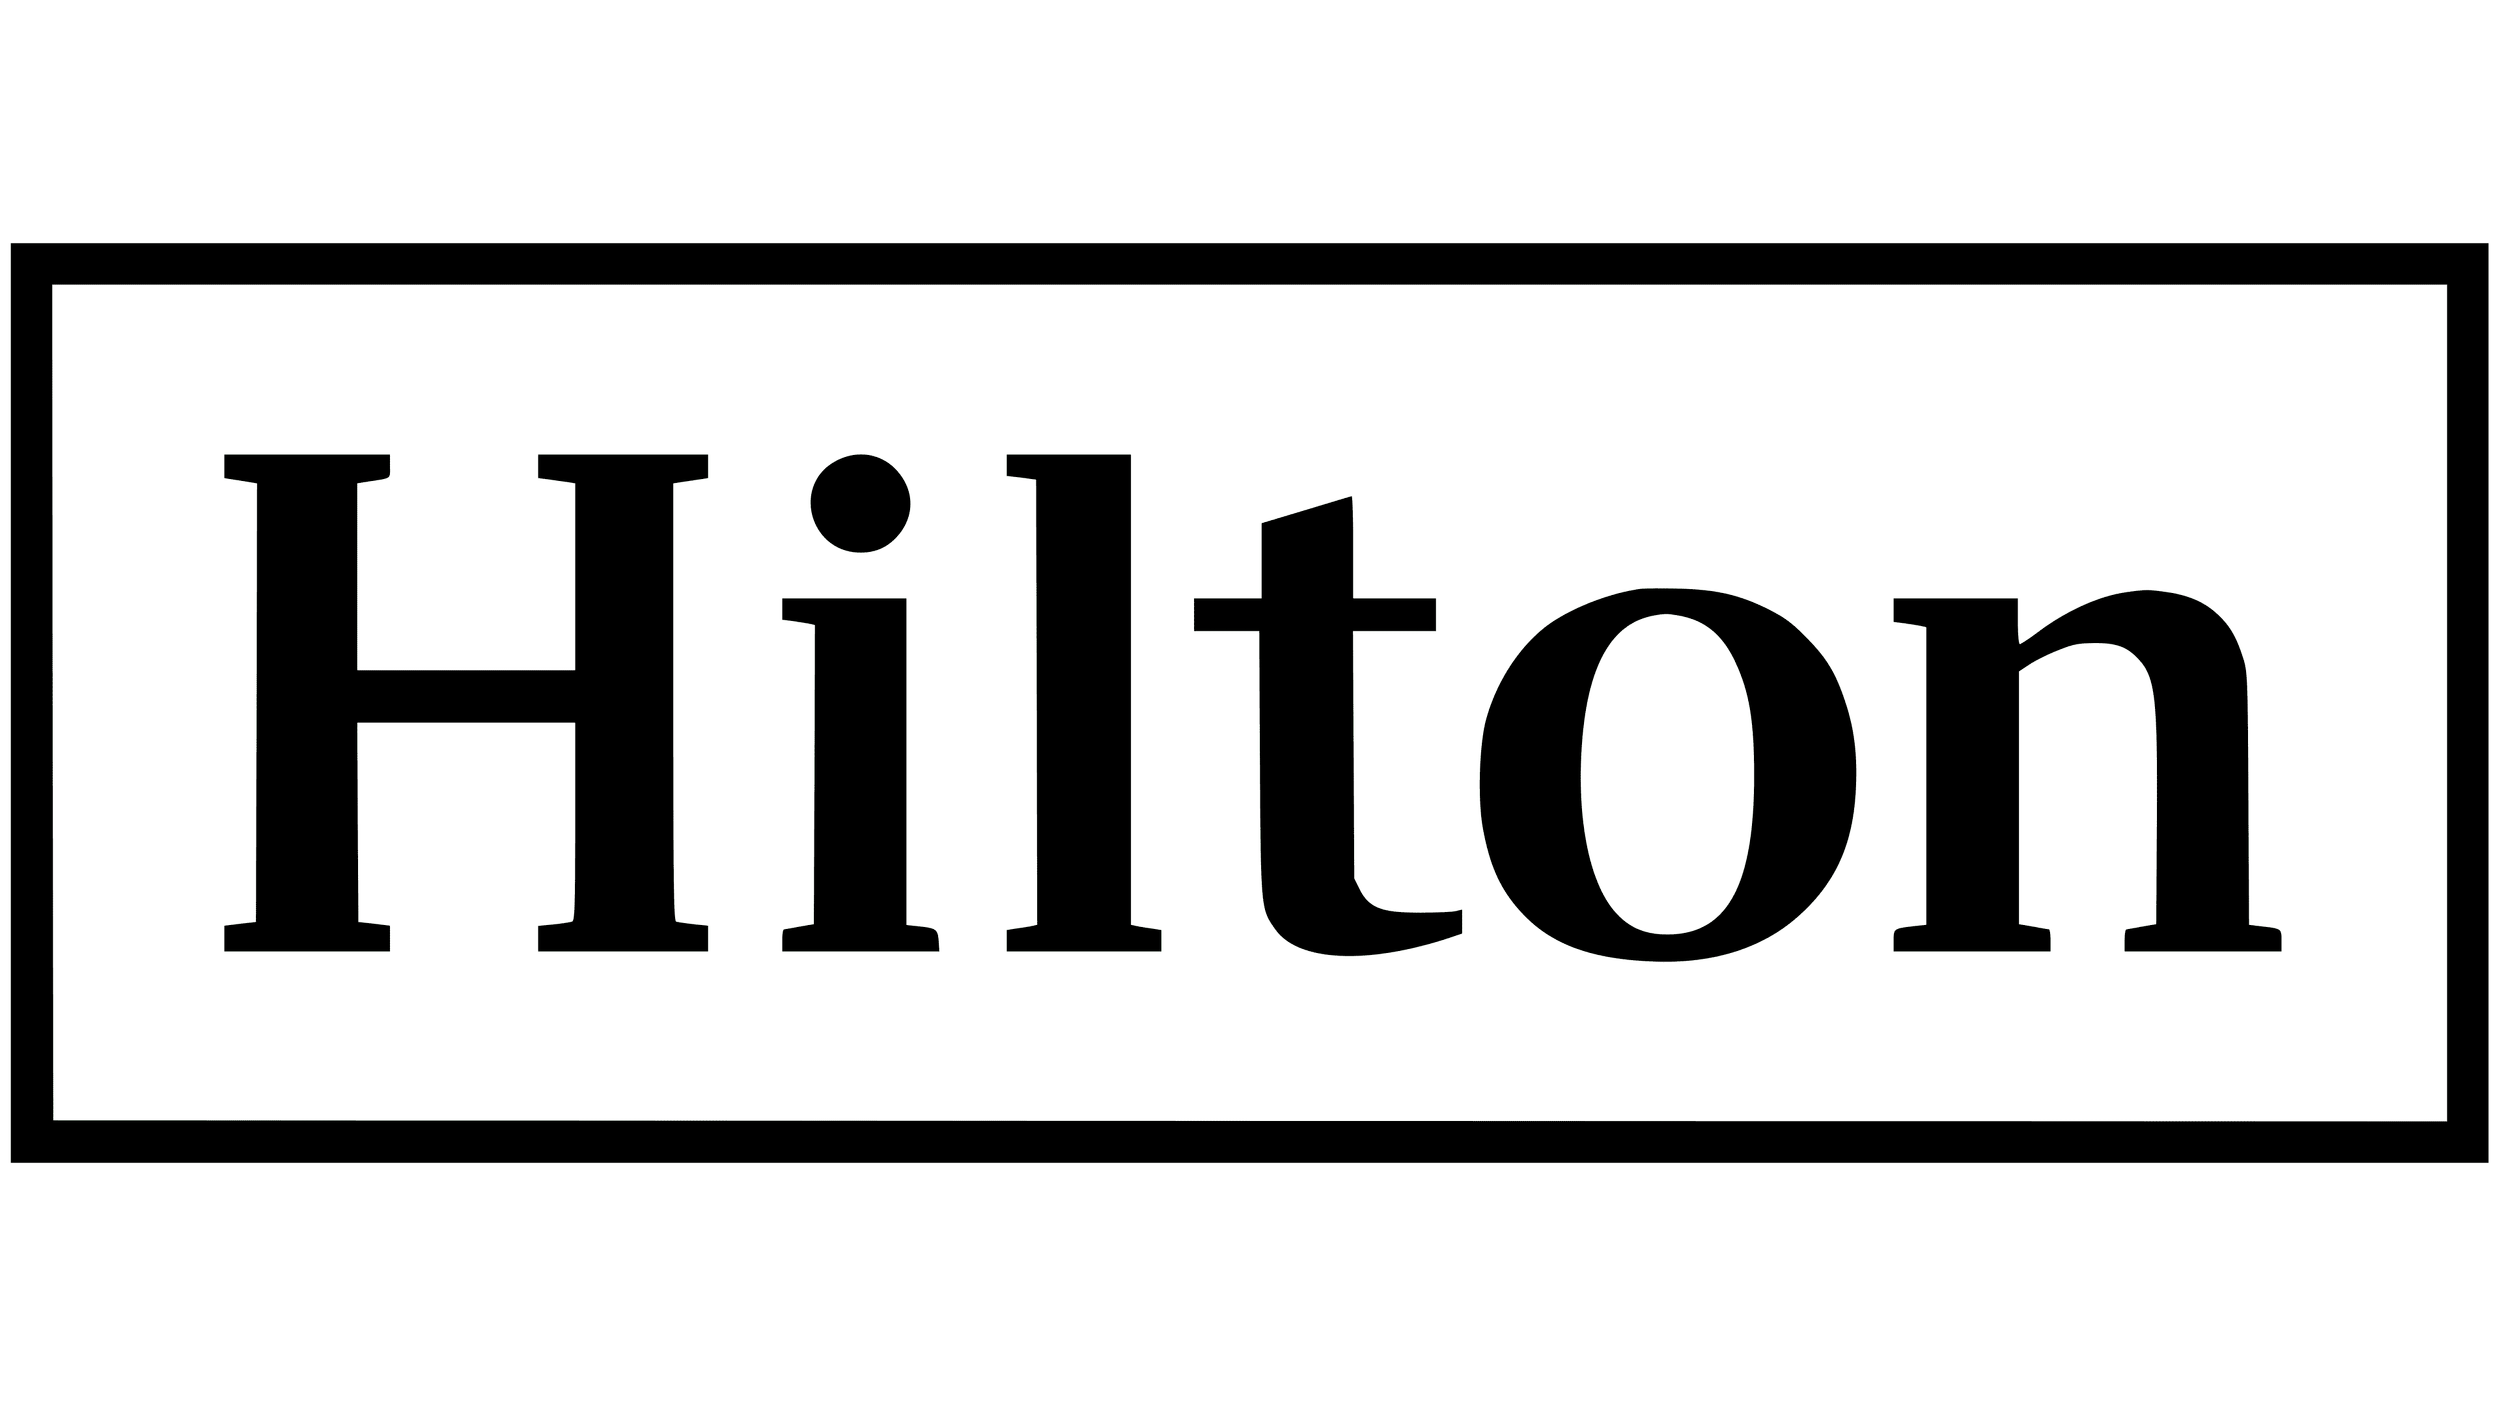 Hilton Logo.png